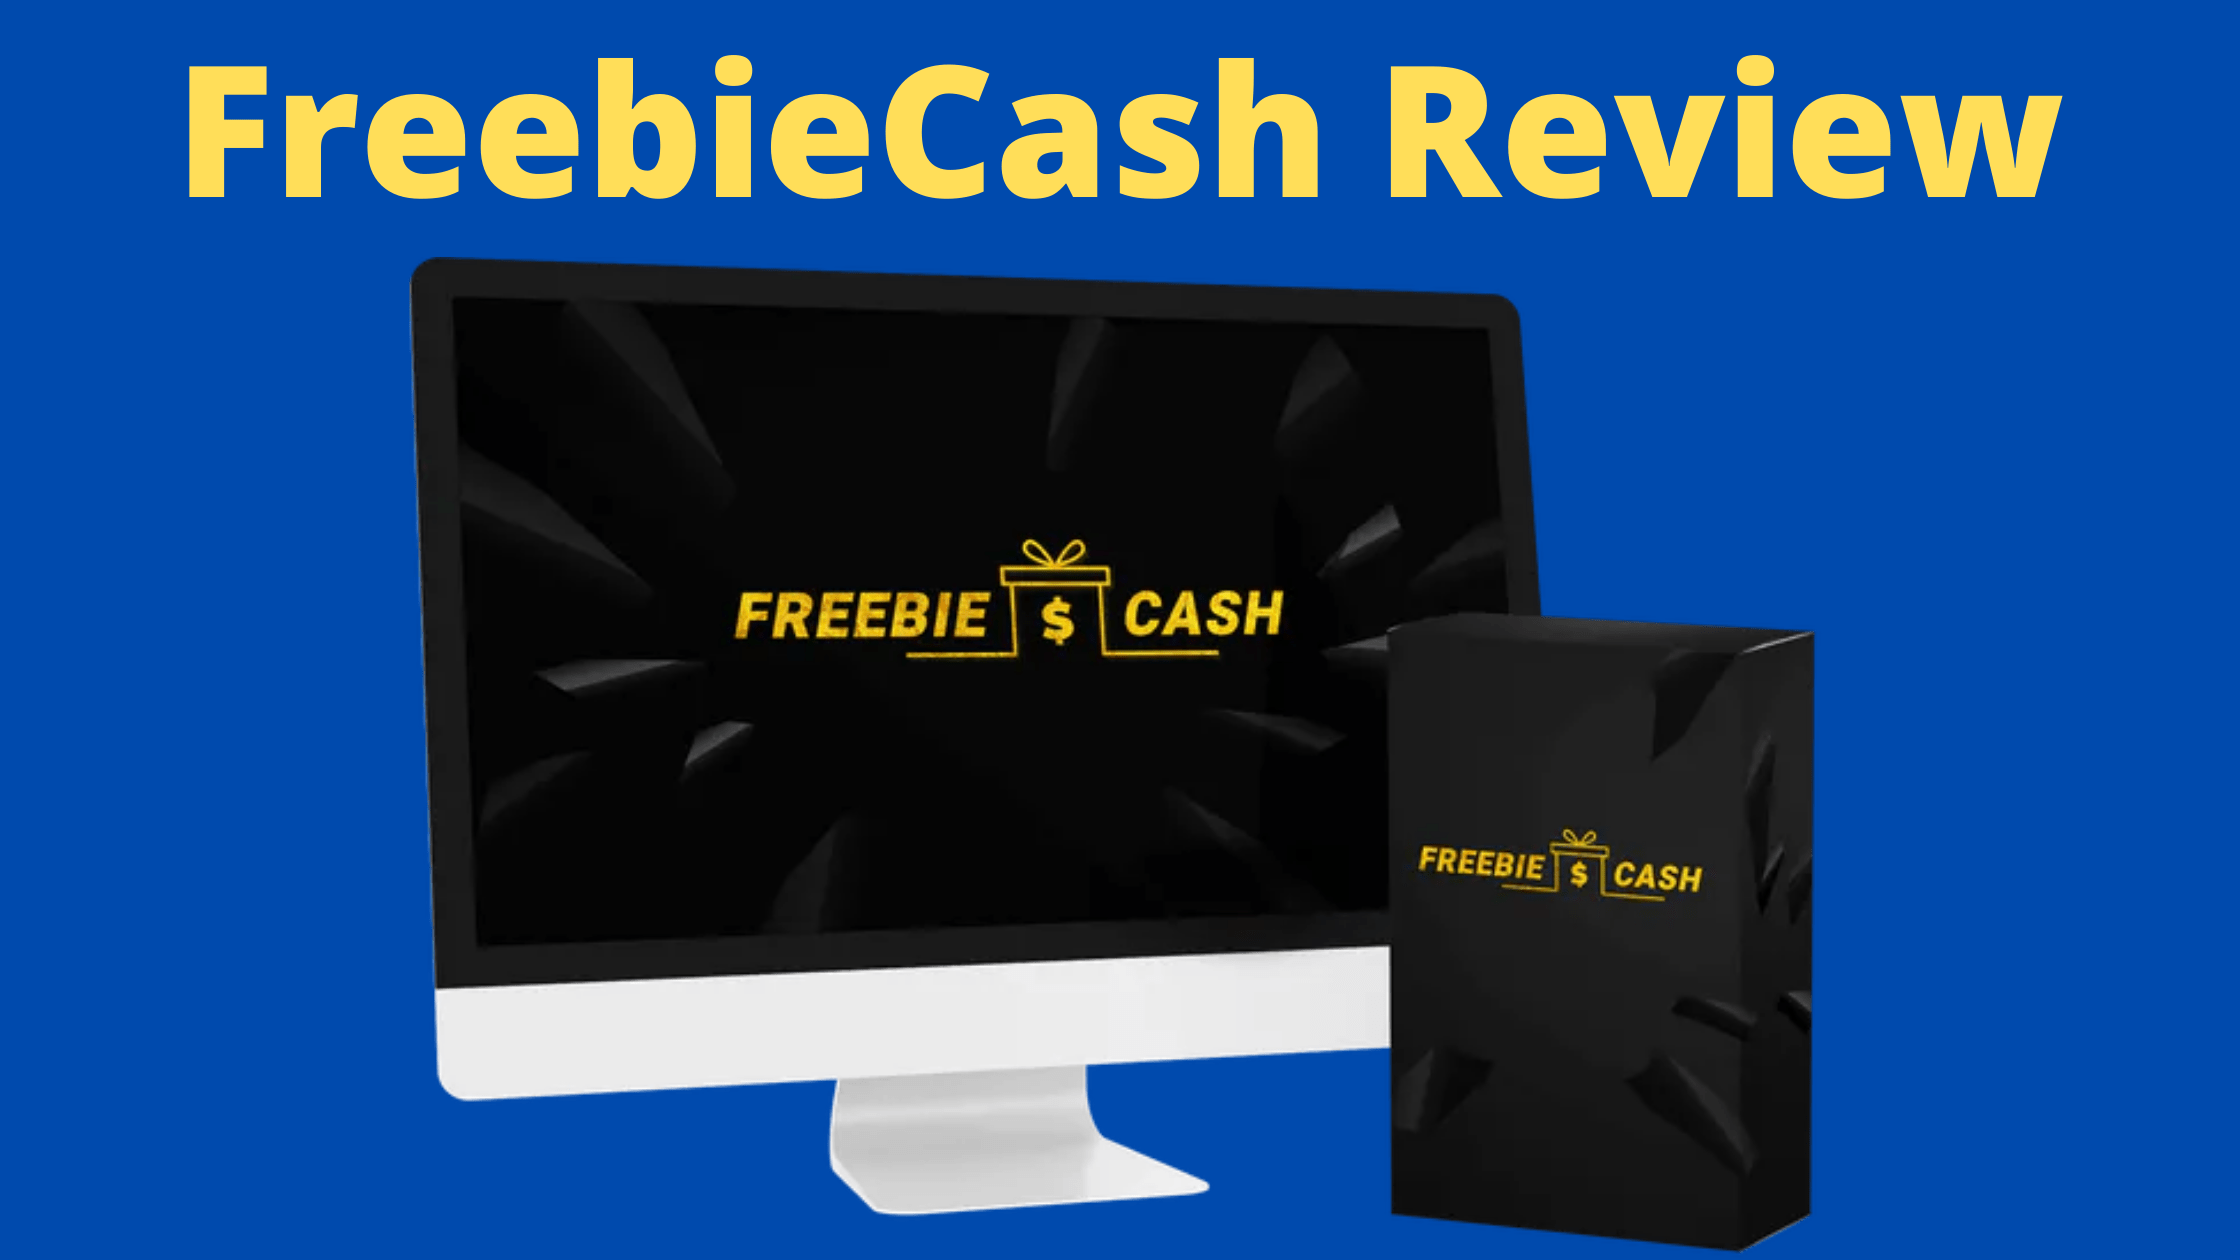 FreebieCash Review